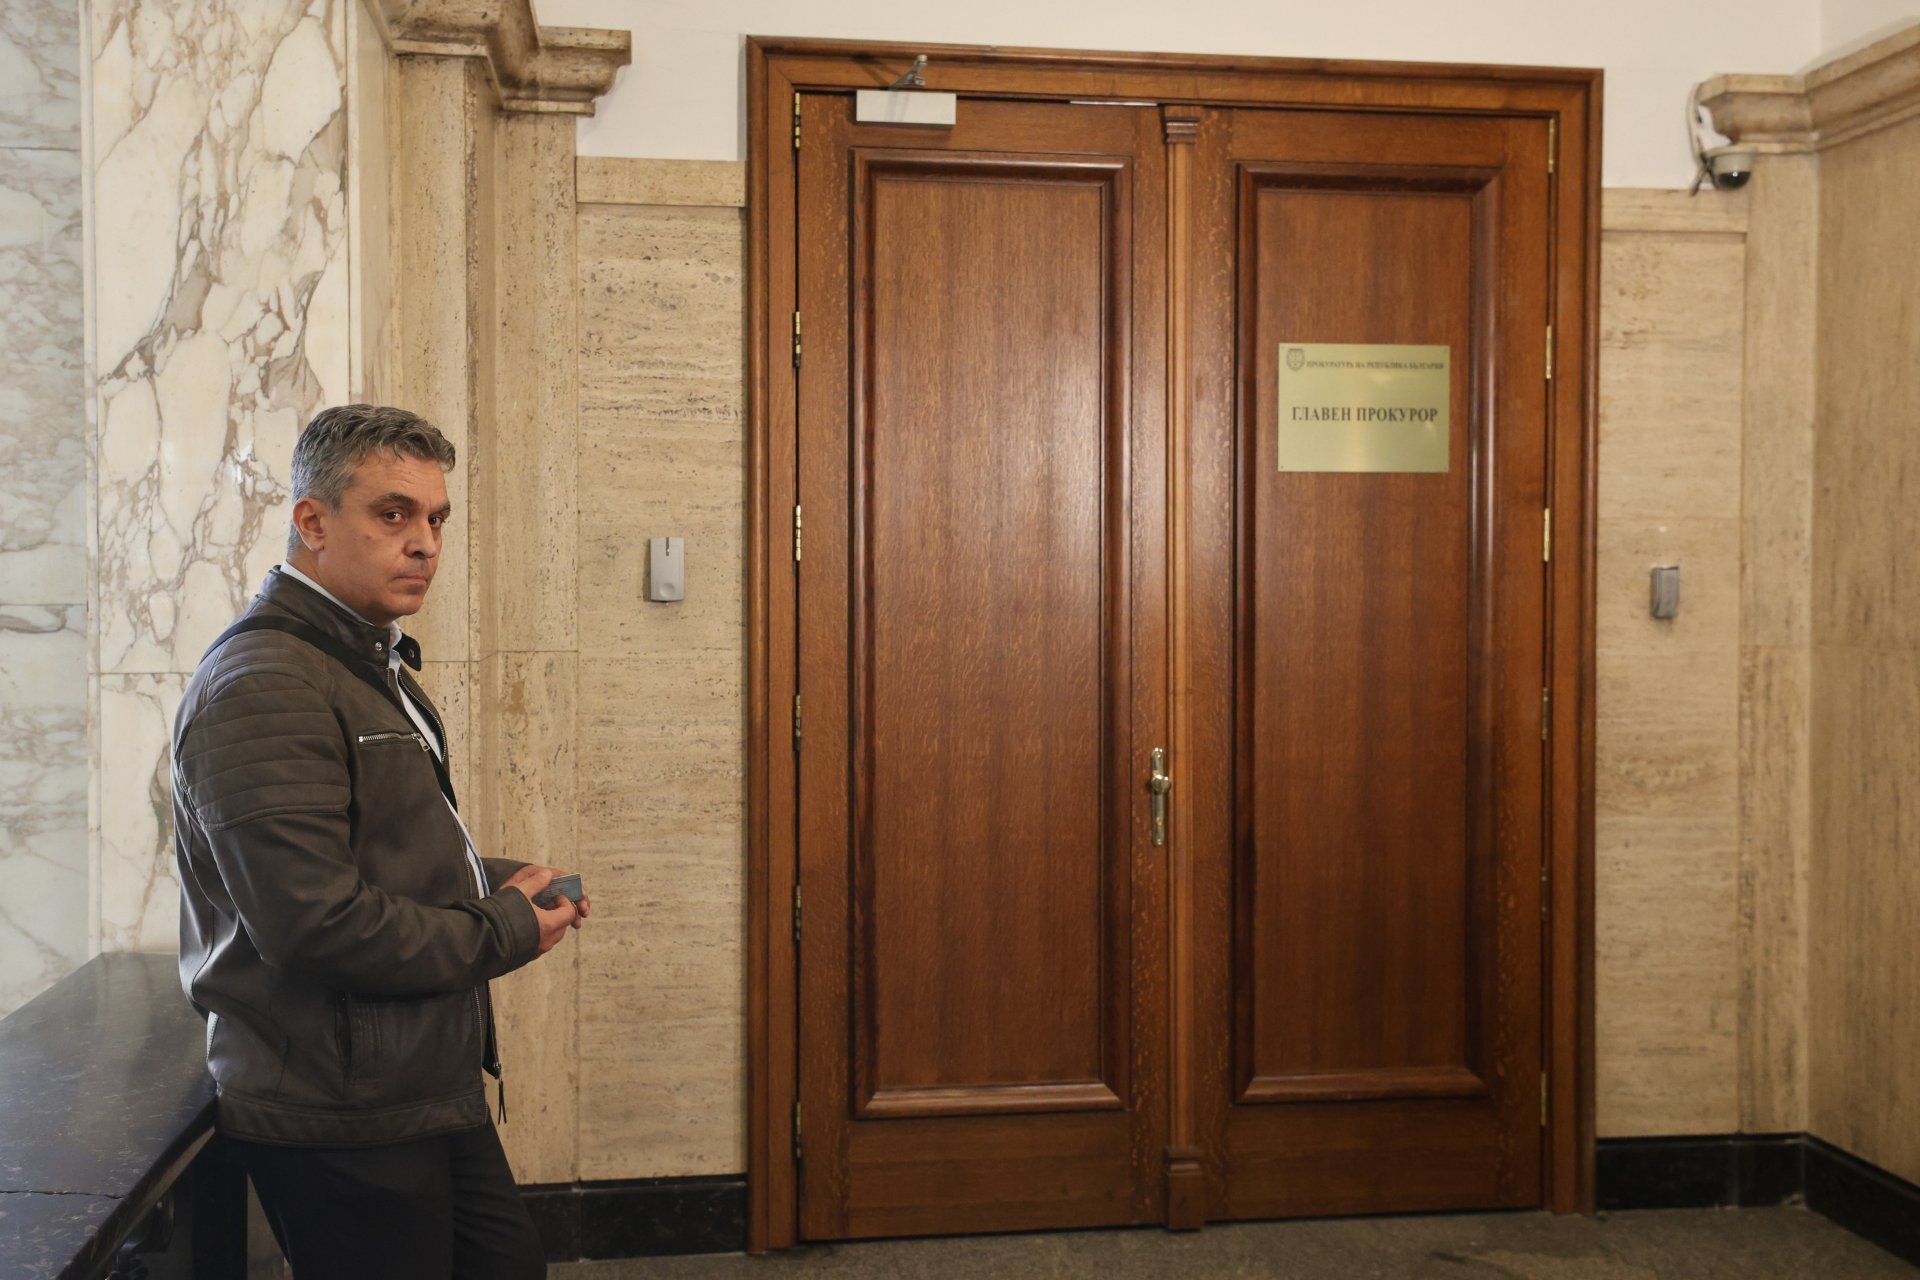  В Съдебната палата се провежда среща между и.д. главен прокурор Борислав Сарафов и прокурор Йордан Кожухаров (на снимката)